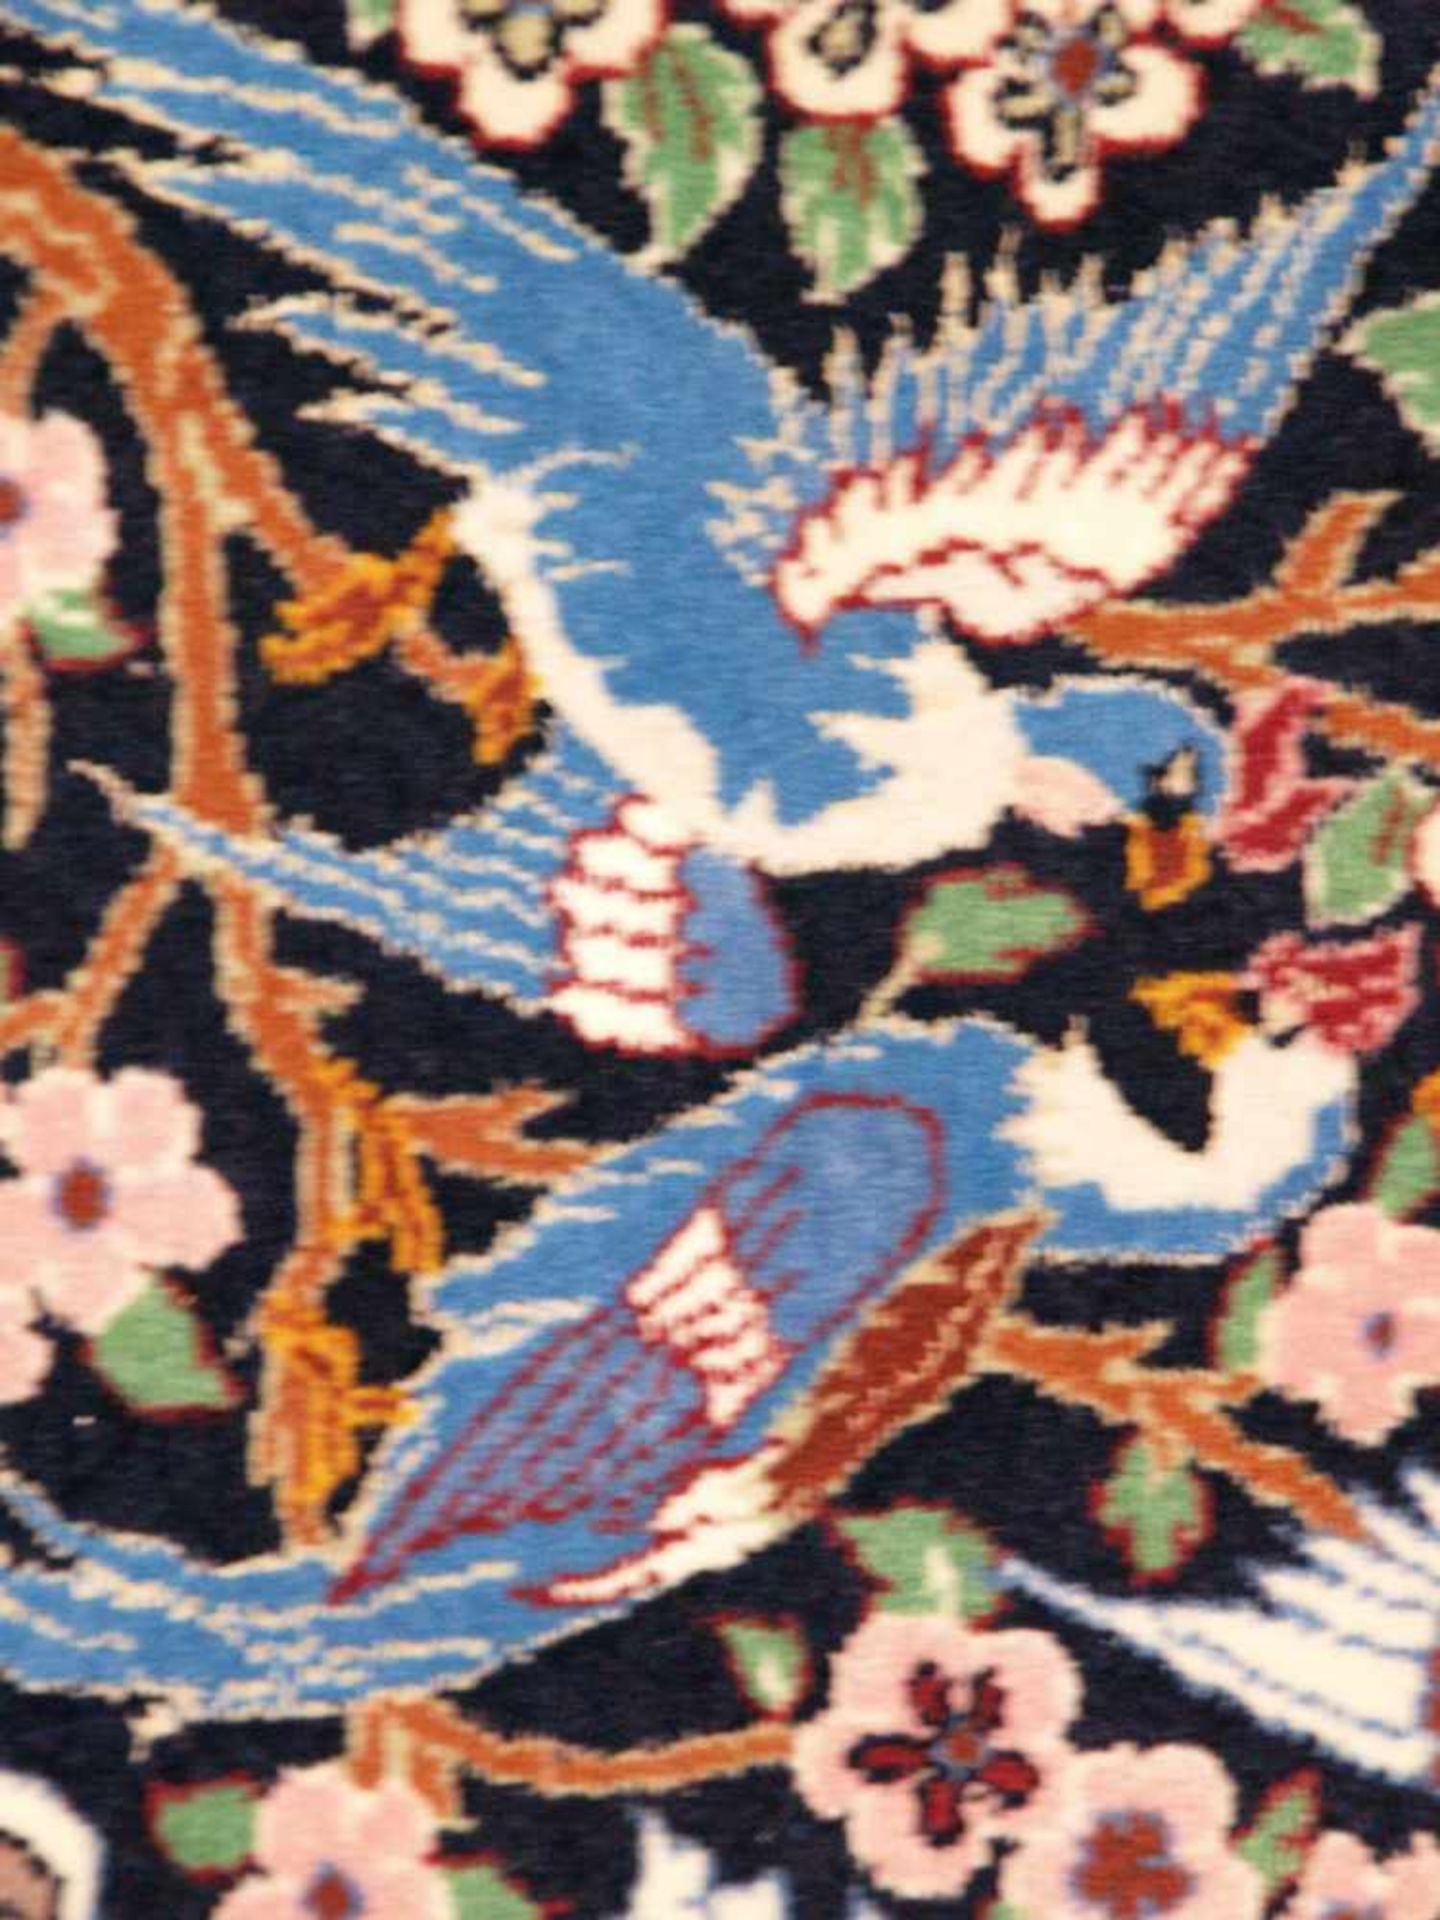 Orientteppich - Wolle und Seide, blaugrundig, zentrale florale Kartusche, gerahmt von Vögeln, - Bild 5 aus 11